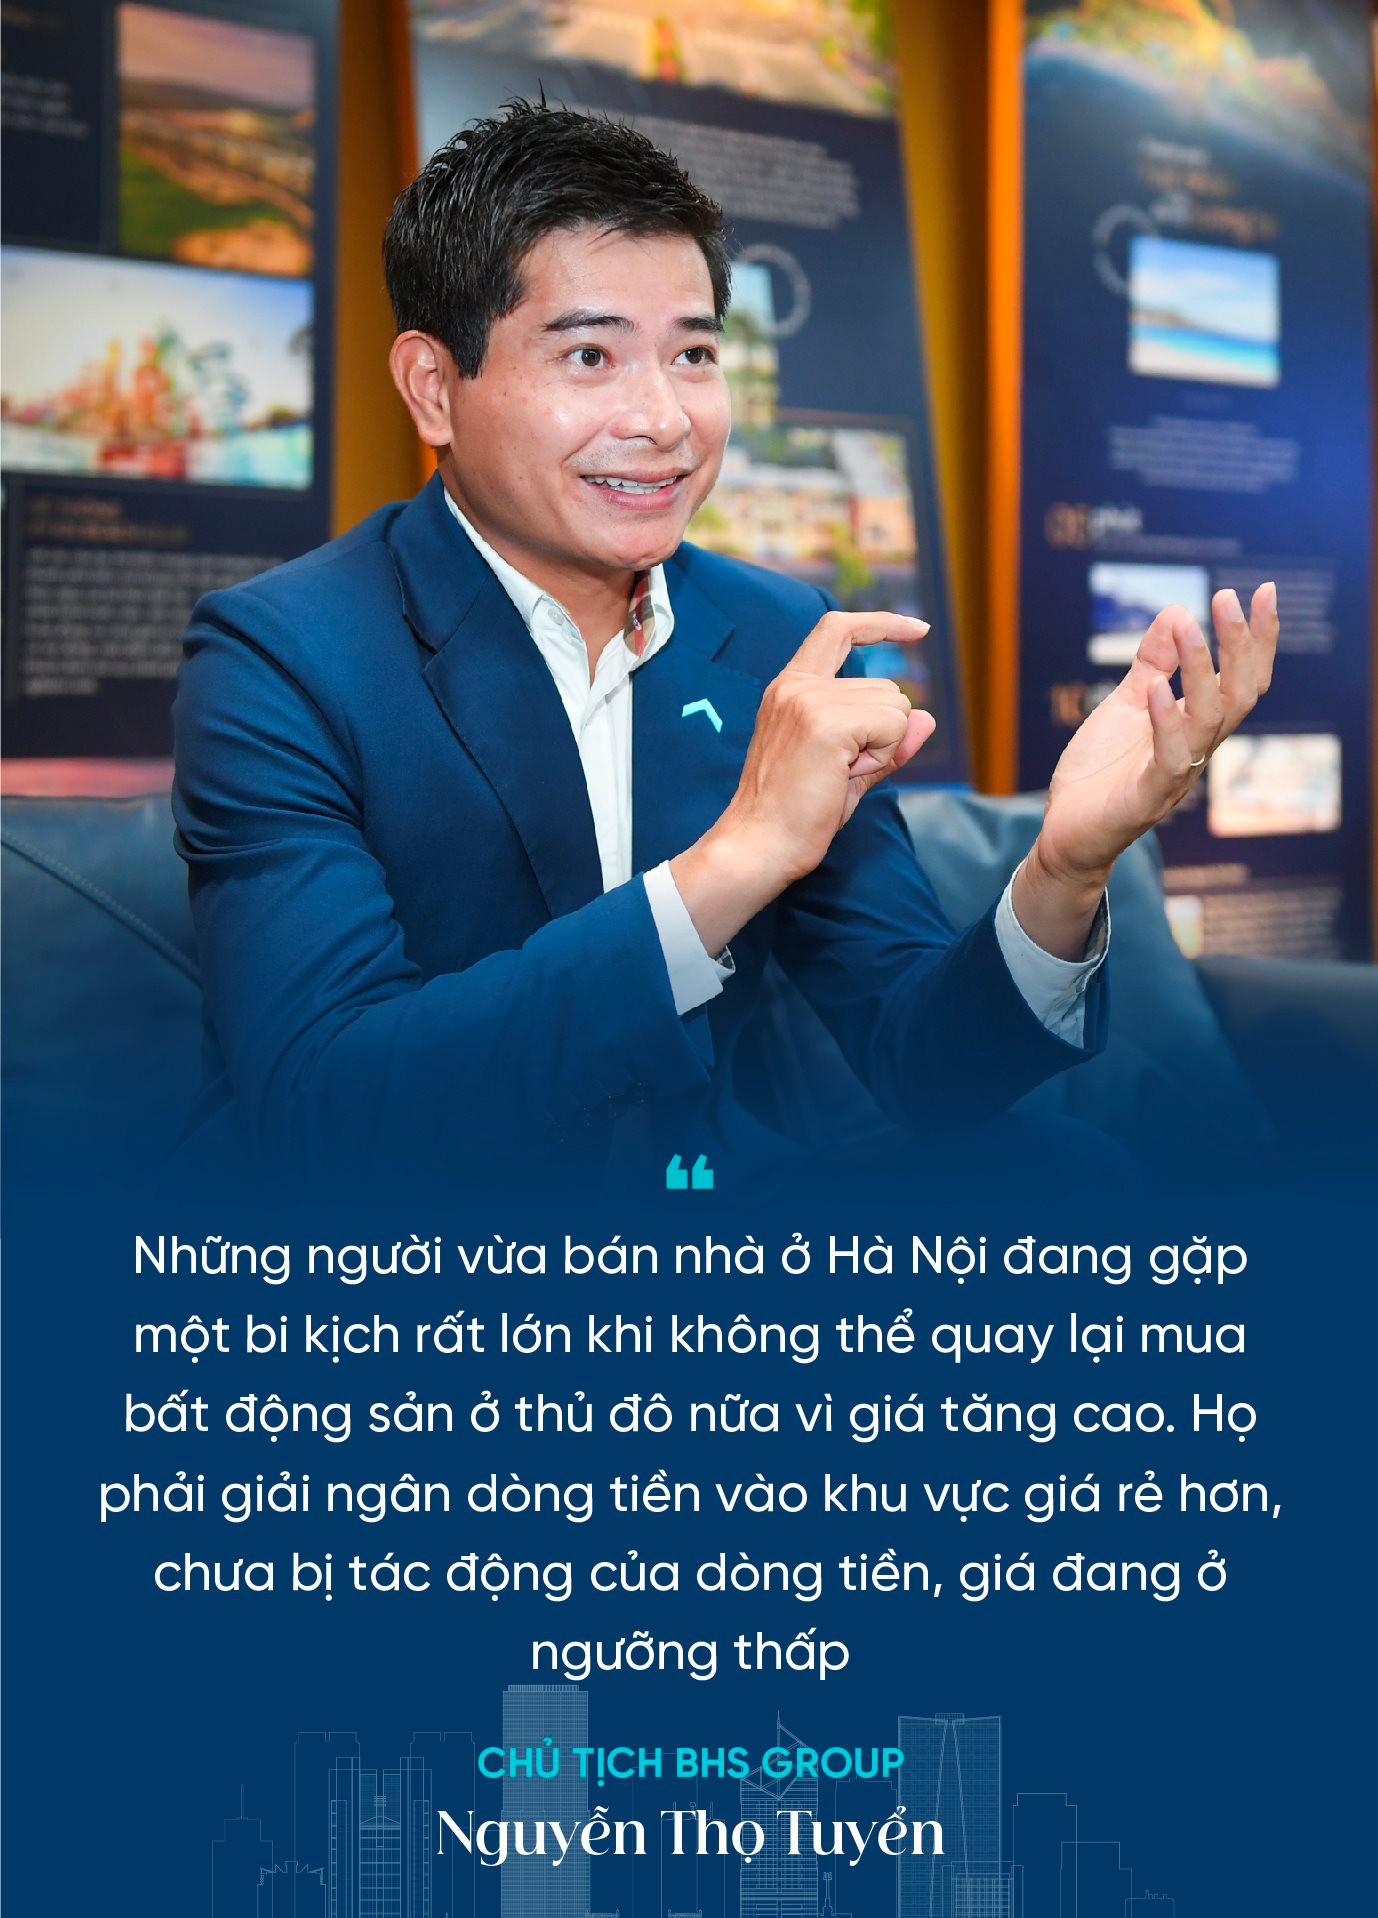 Chủ tịch BHS Group Nguyễn Thọ Tuyển: Dòng tiền lớn như một quả bom nguyên tử đang “hâm nóng” bất động sản Hà Nội, tiếp theo sẽ kích nổ hàng loạt khu vực - Ảnh 6.